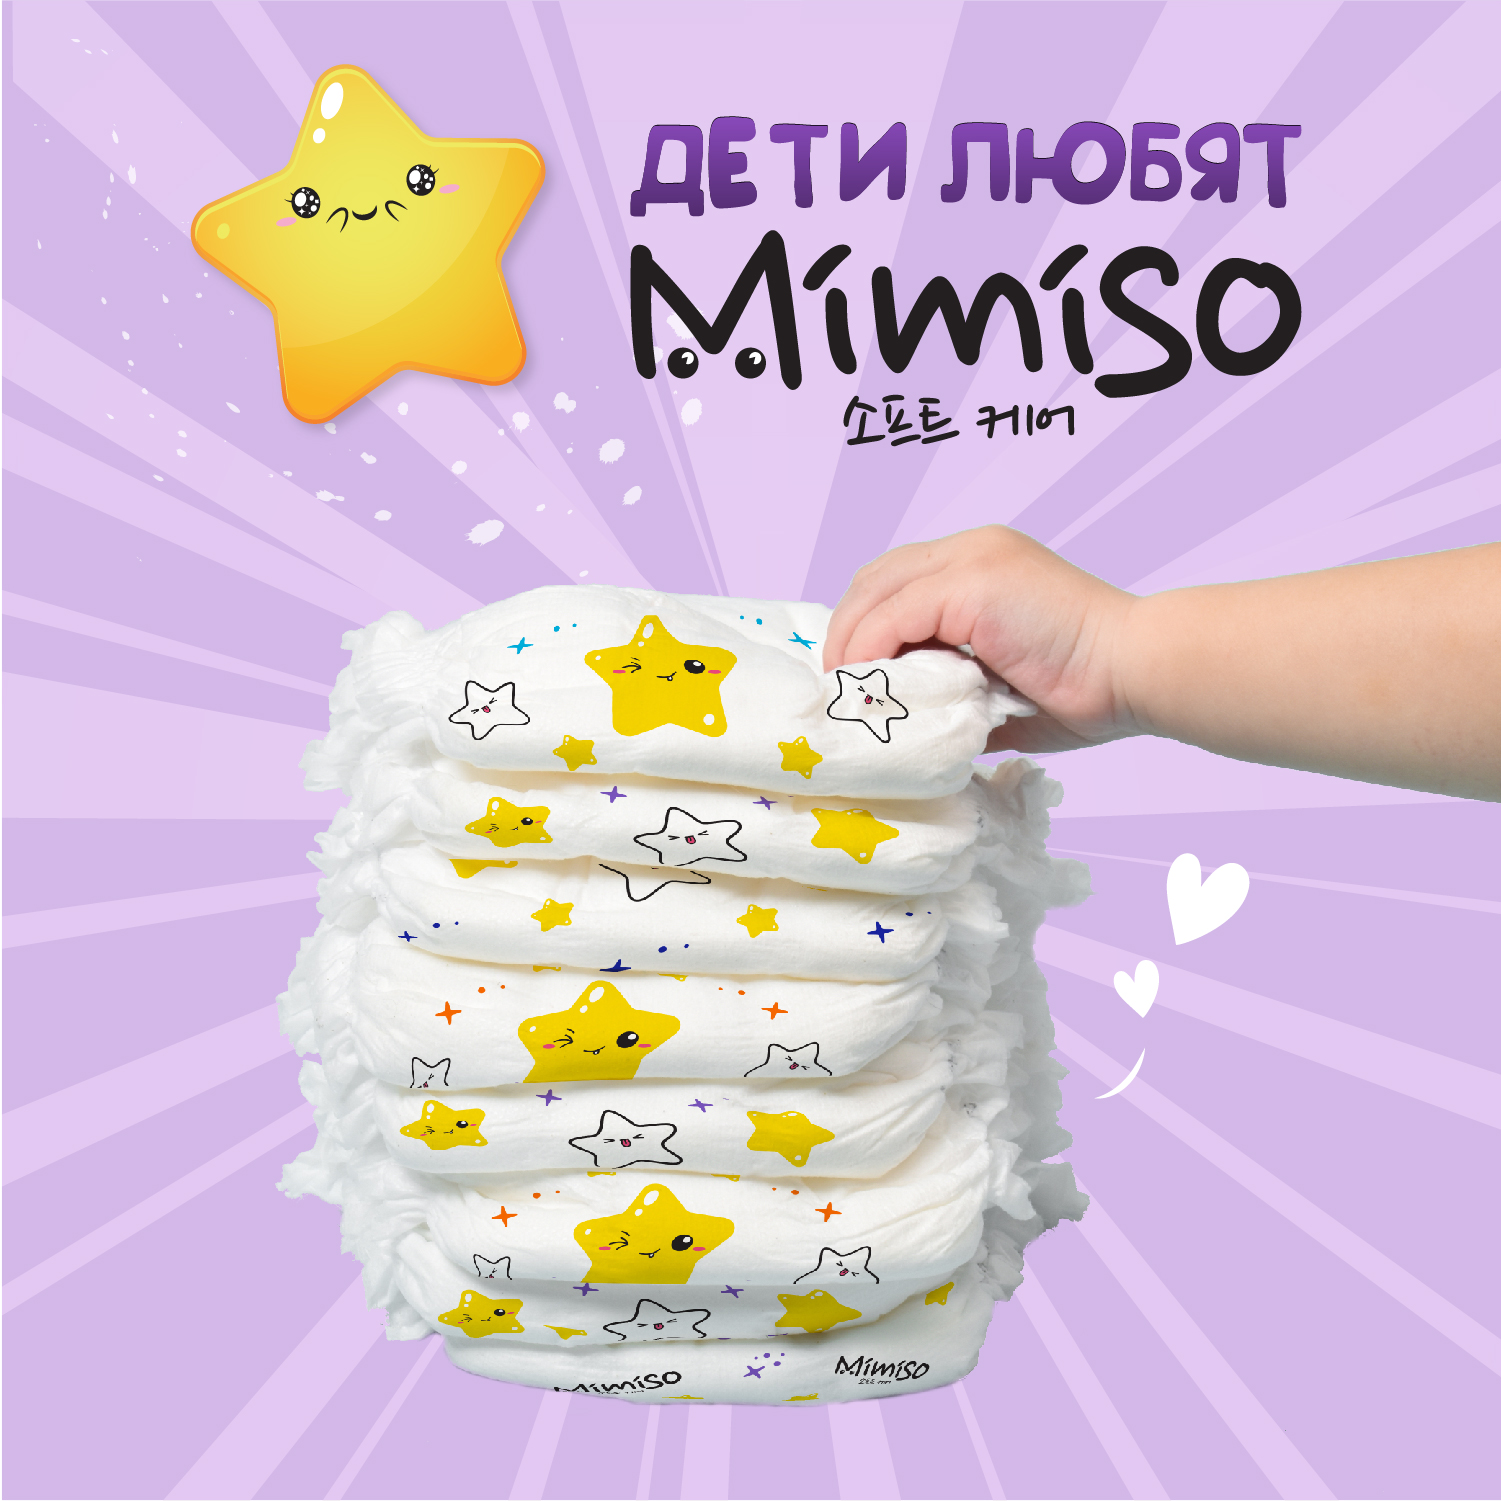 Трусики Mimiso одноразовые для детей 4/L 9-14 кг mega-pack 84шт - фото 4